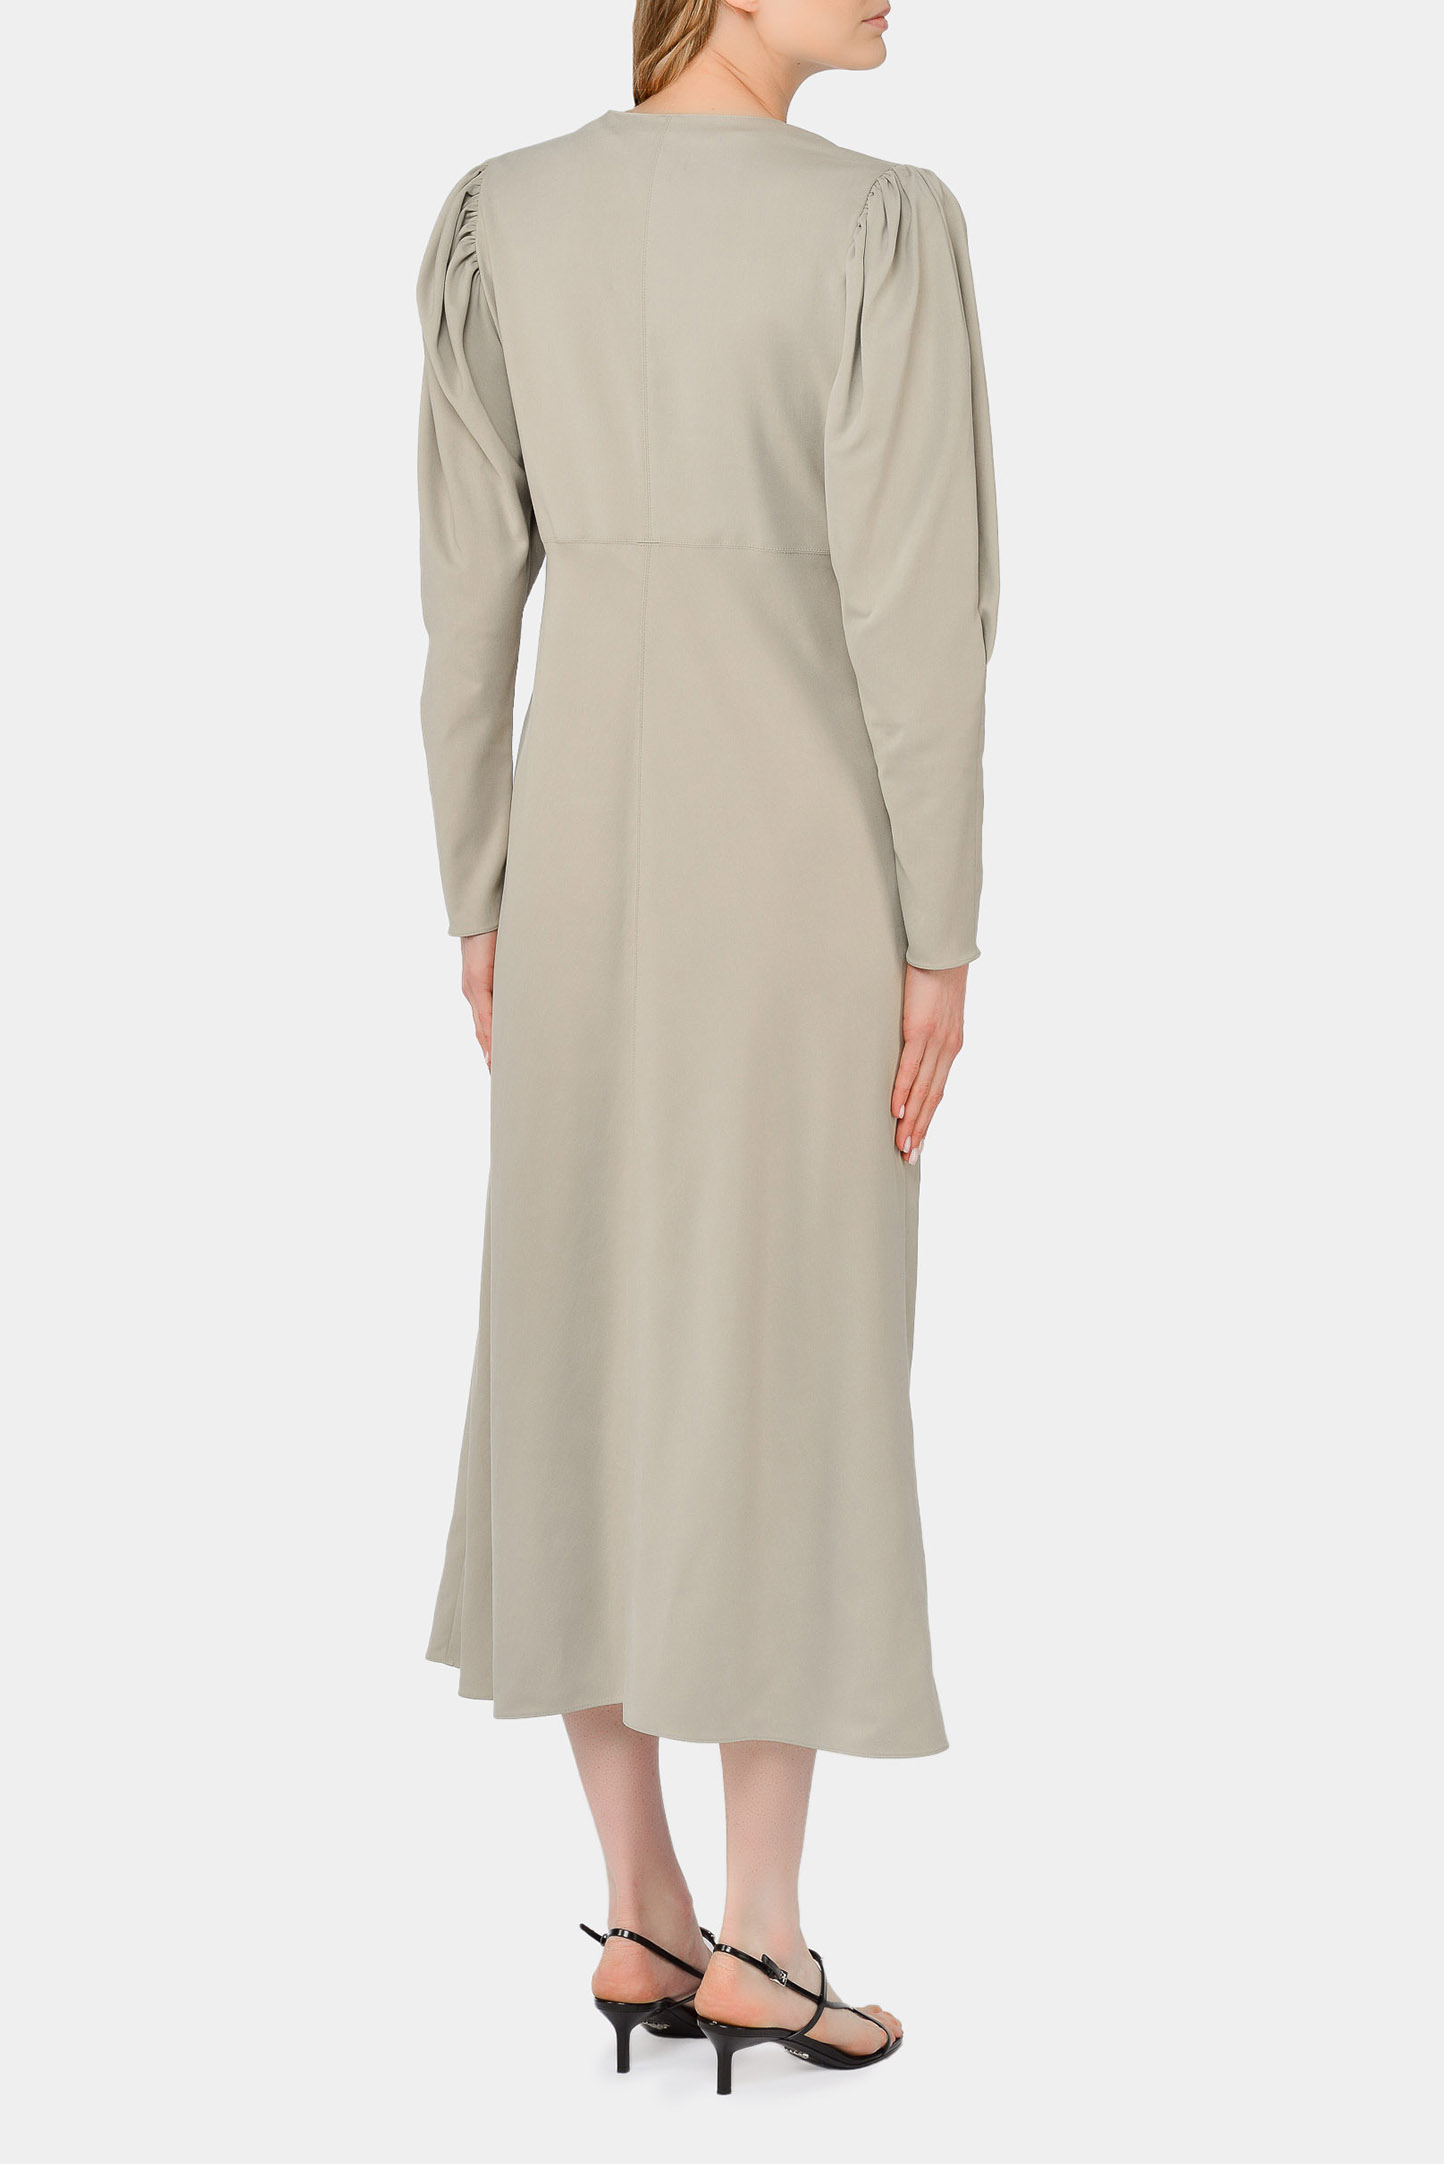 Платье ISABEL MARANT RO1905-21P012I, цвет: Молочный, Женский